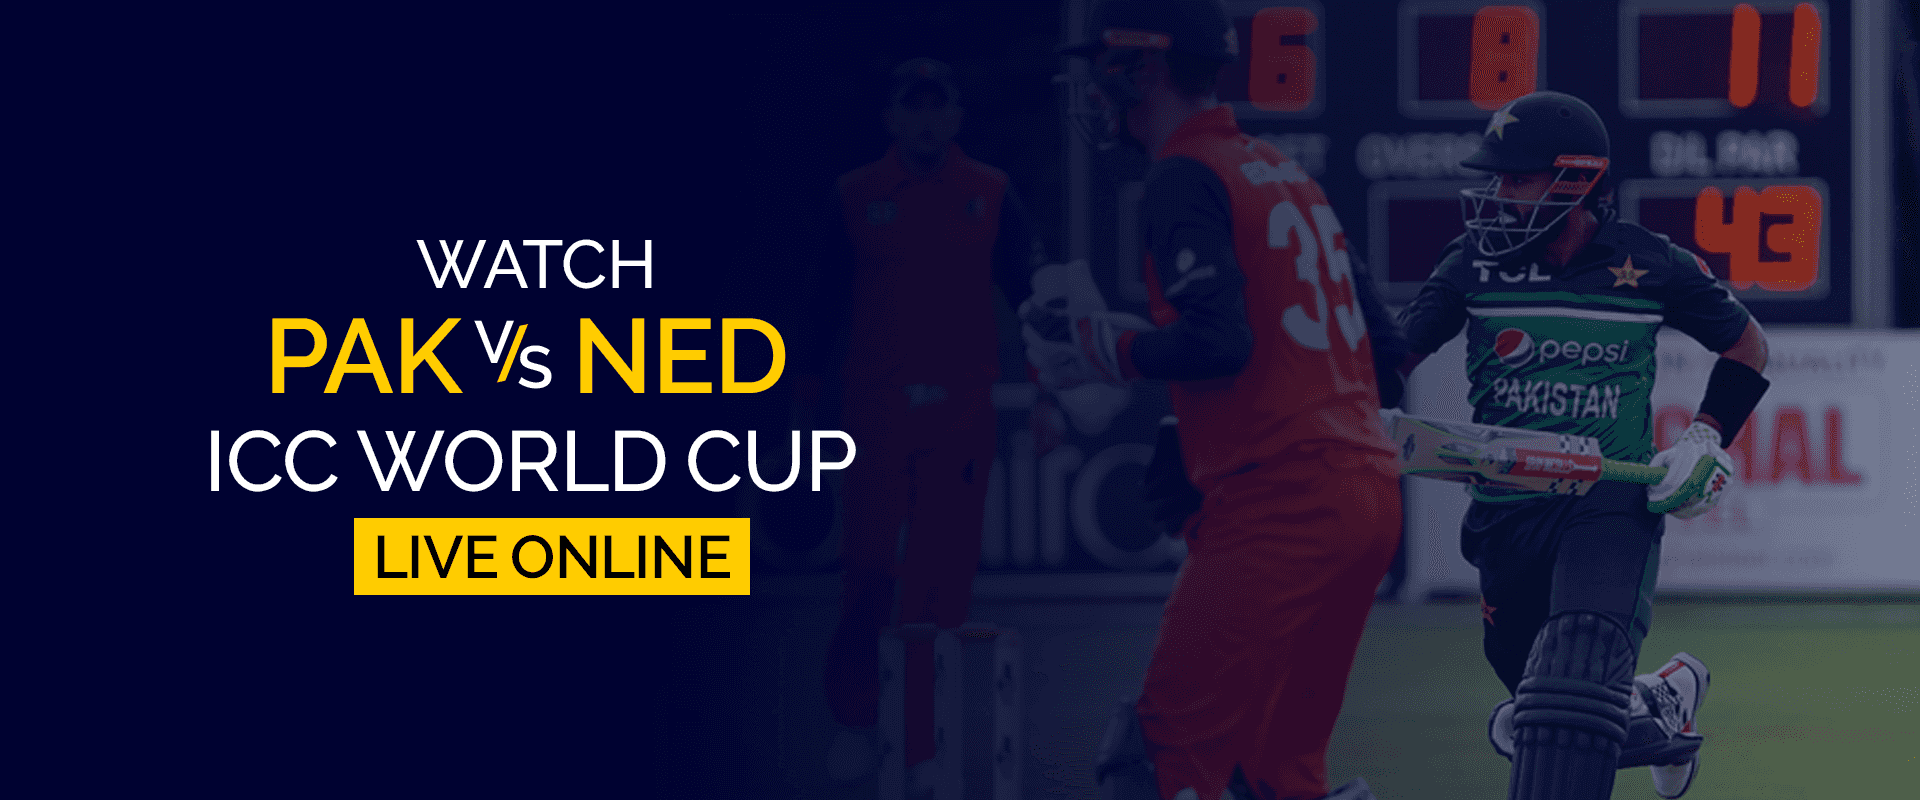 مشاهدة PAK vs NED ICC كأس العالم مباشرة على الإنترنت